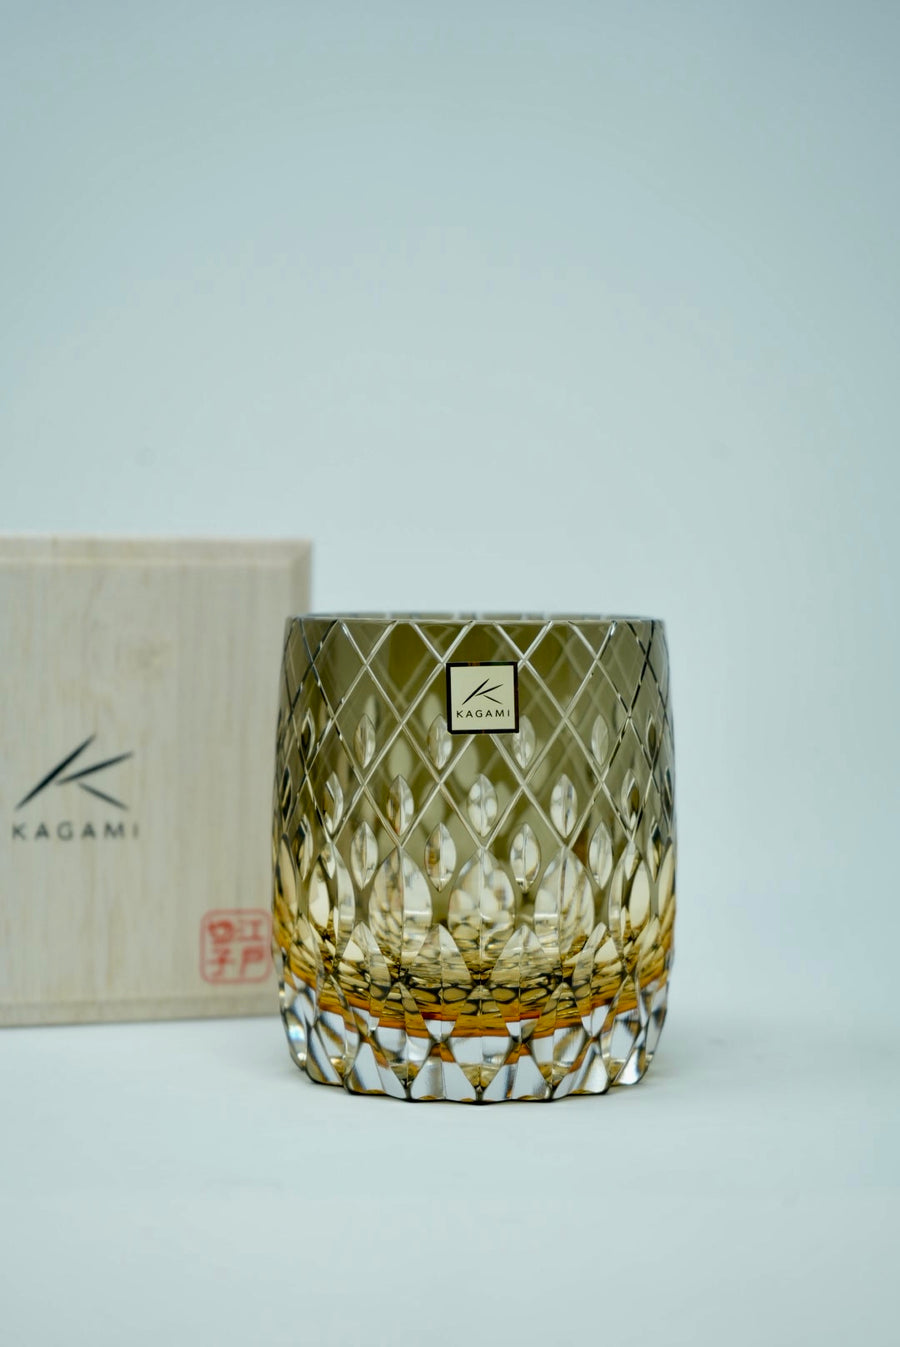 Kagami Crystal - Whiskey Glass, Edo Kiriko Kasaneirome "Enrai (distant thunder)" by Hideaki Shinozaki